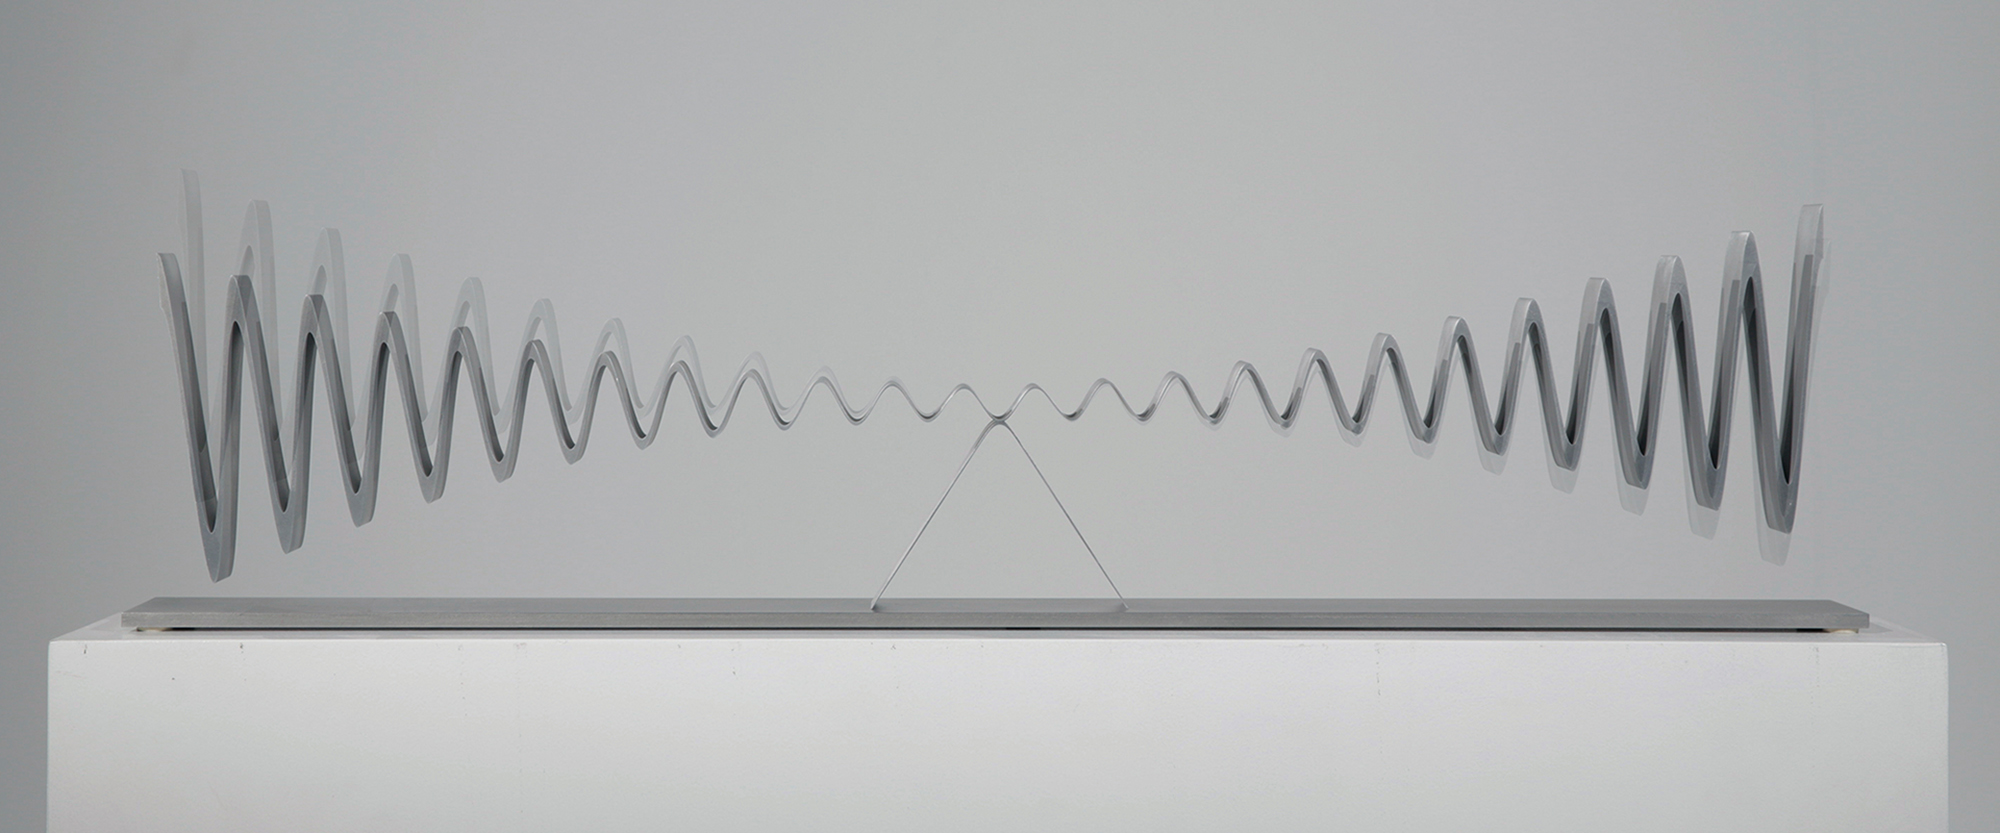 Wellen-Doppelschwinger - 2015/2017, Duraluminium, mit Vorspannung aus Block geschnitten, Edelstahlplatte, Höhe 21 cm, Breite 94 cm